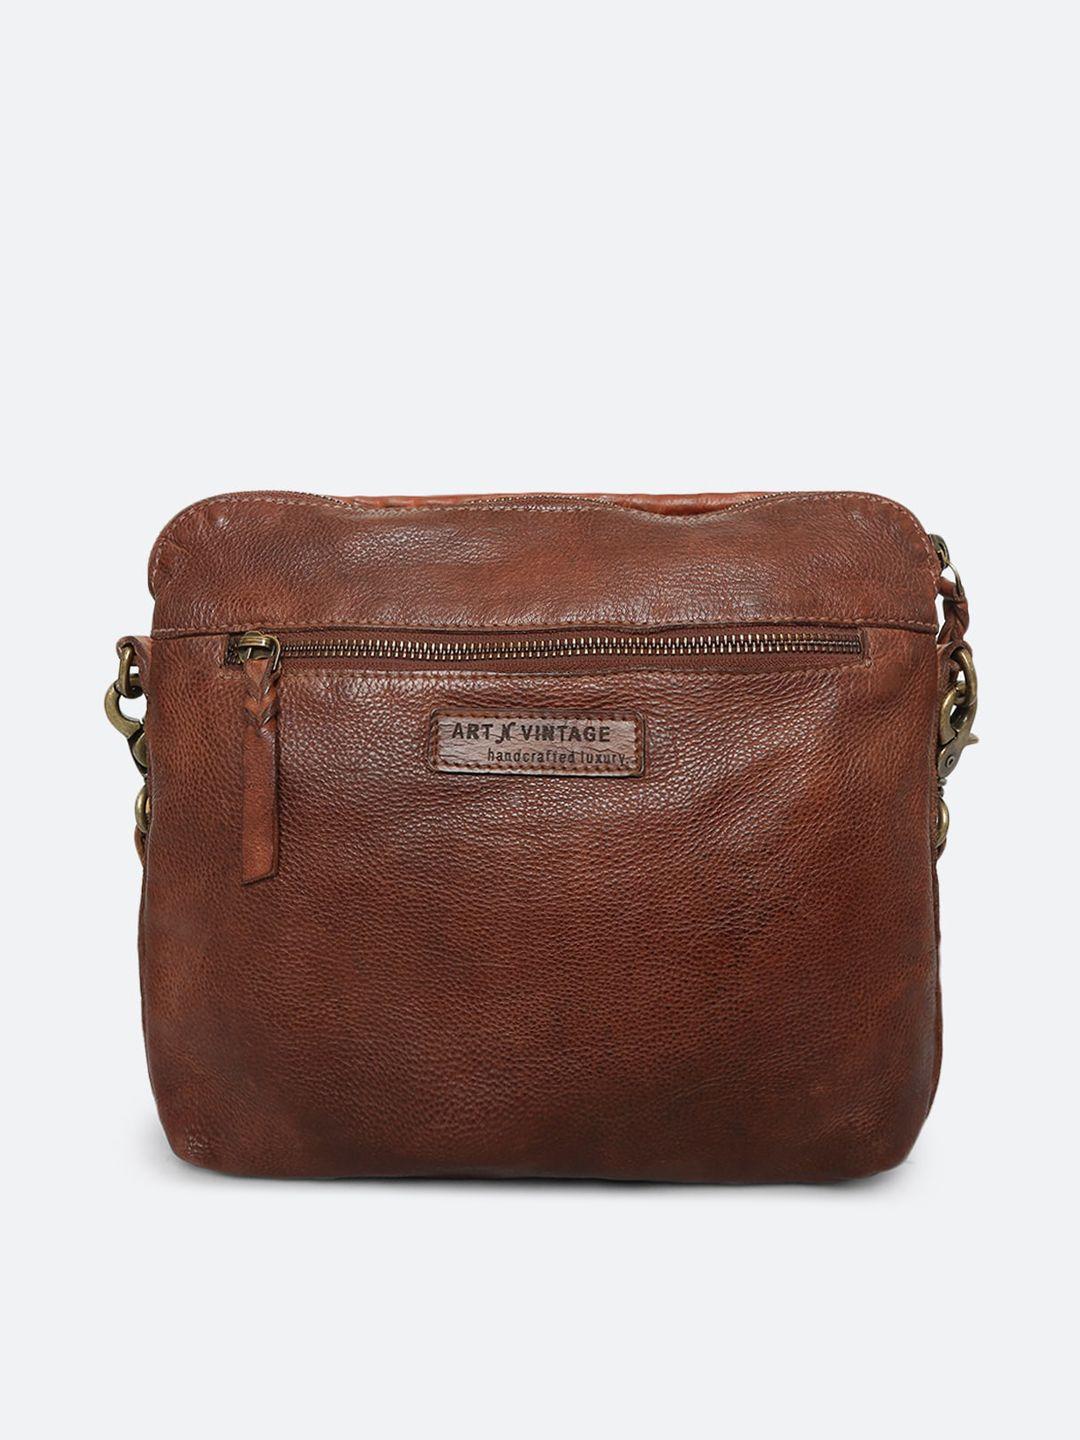 art n vintage leather structured sling bag